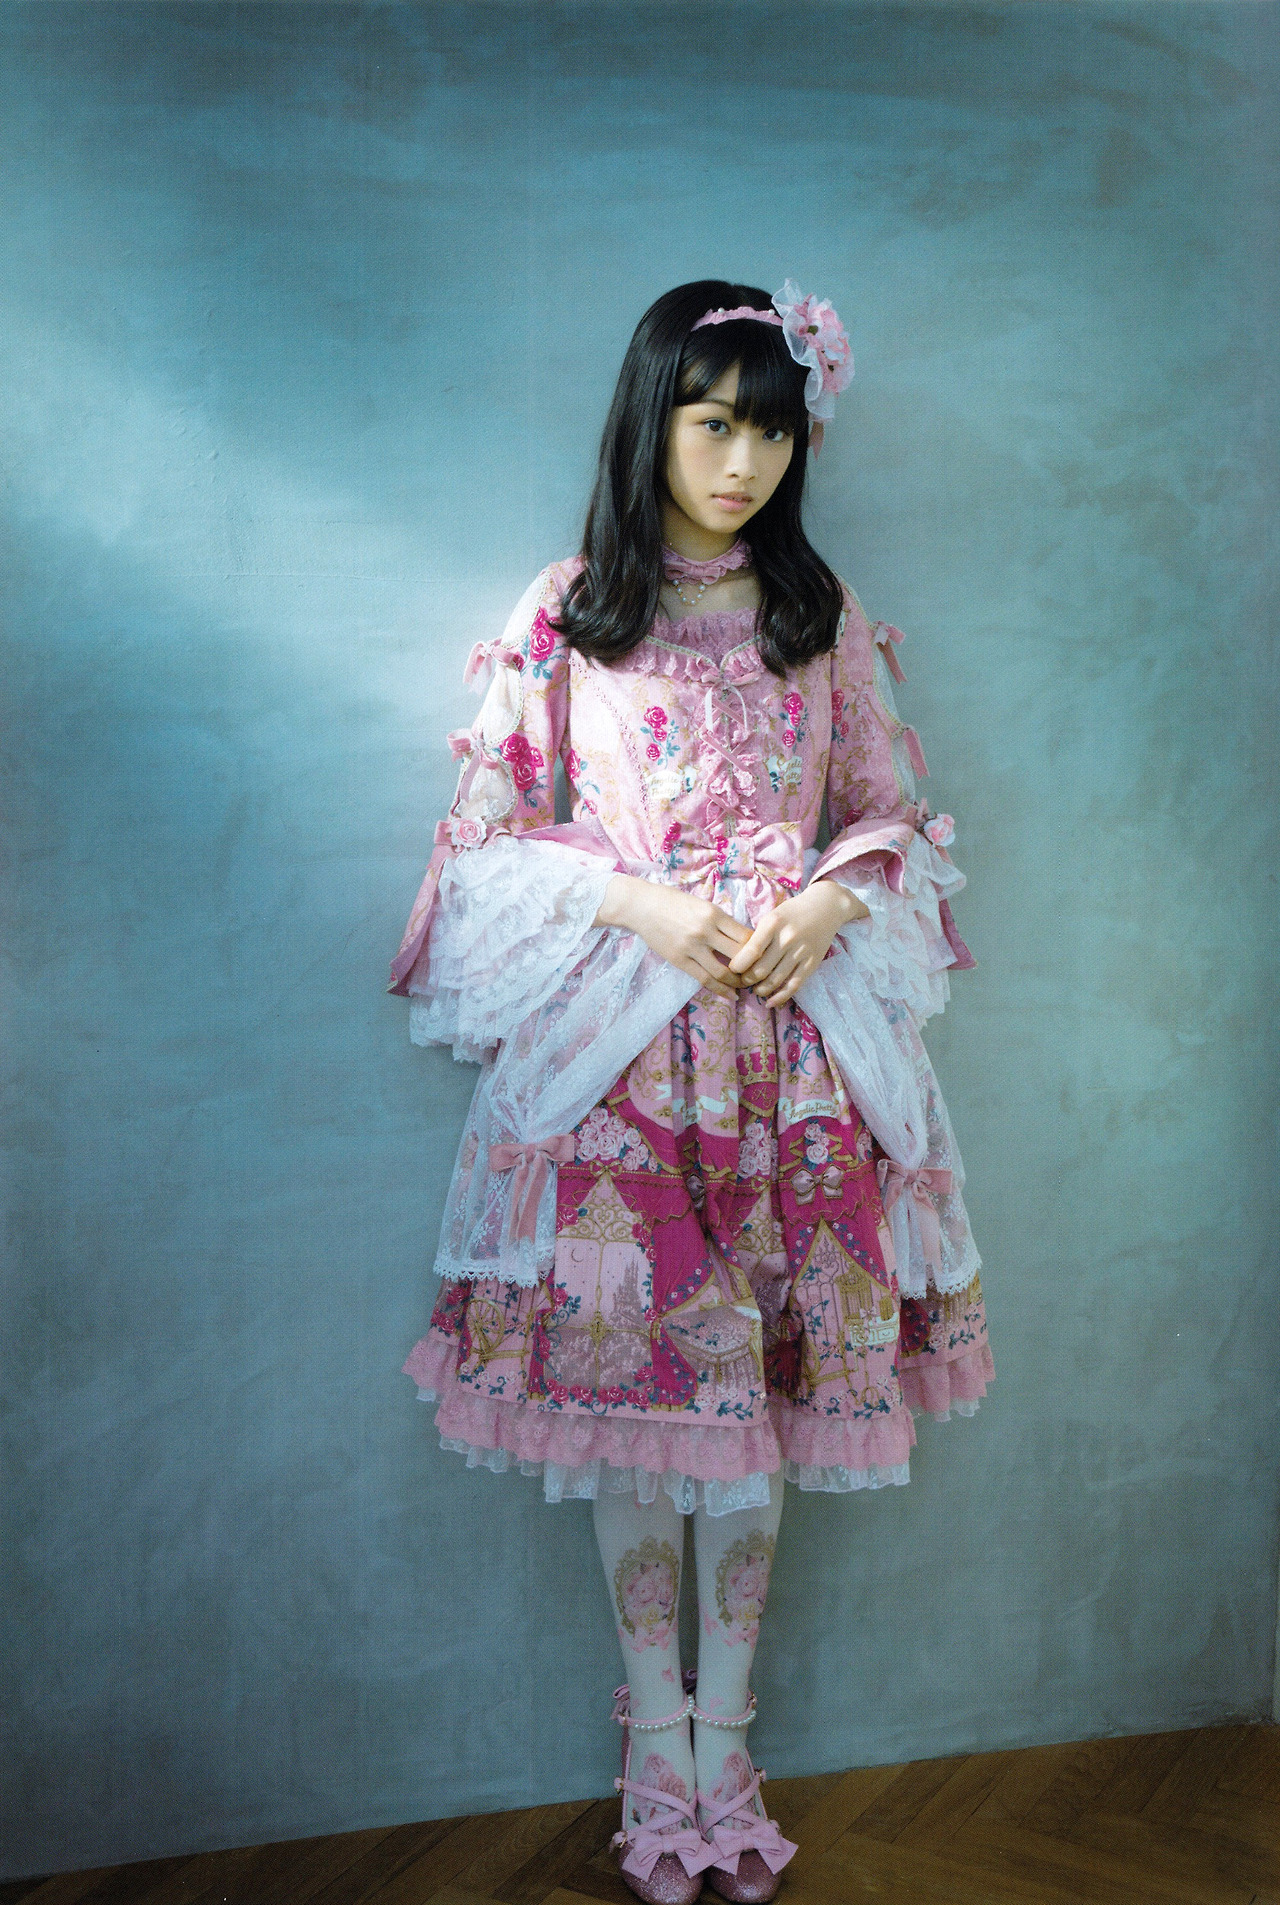 ピンクのフリフリのロリータな衣装を着た原田葵の画像